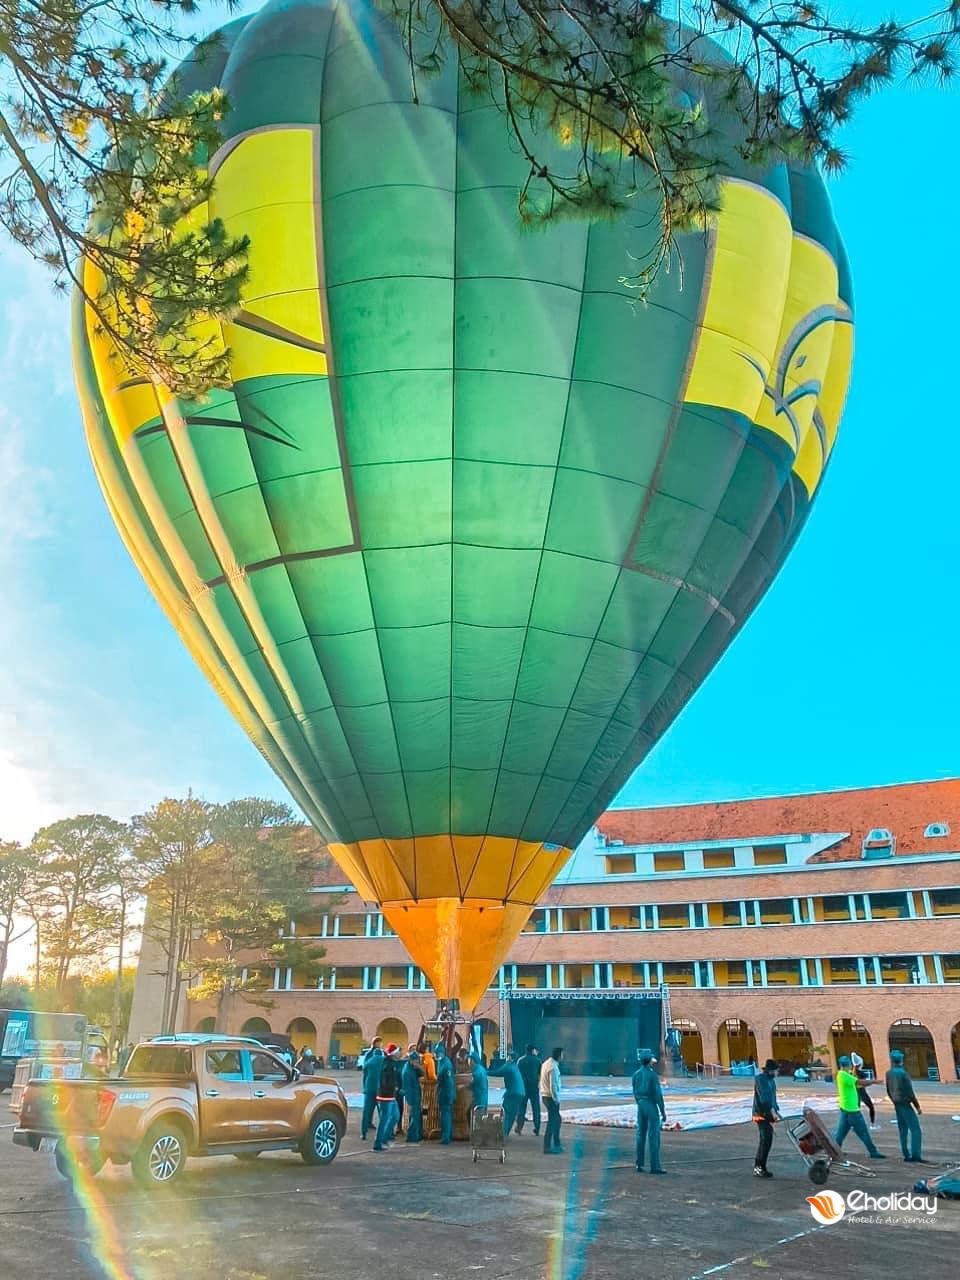 Lễ hội Khinh khí cầu Đà Lạt 2022 tổ chức ở đâu? | Eholiday.vn